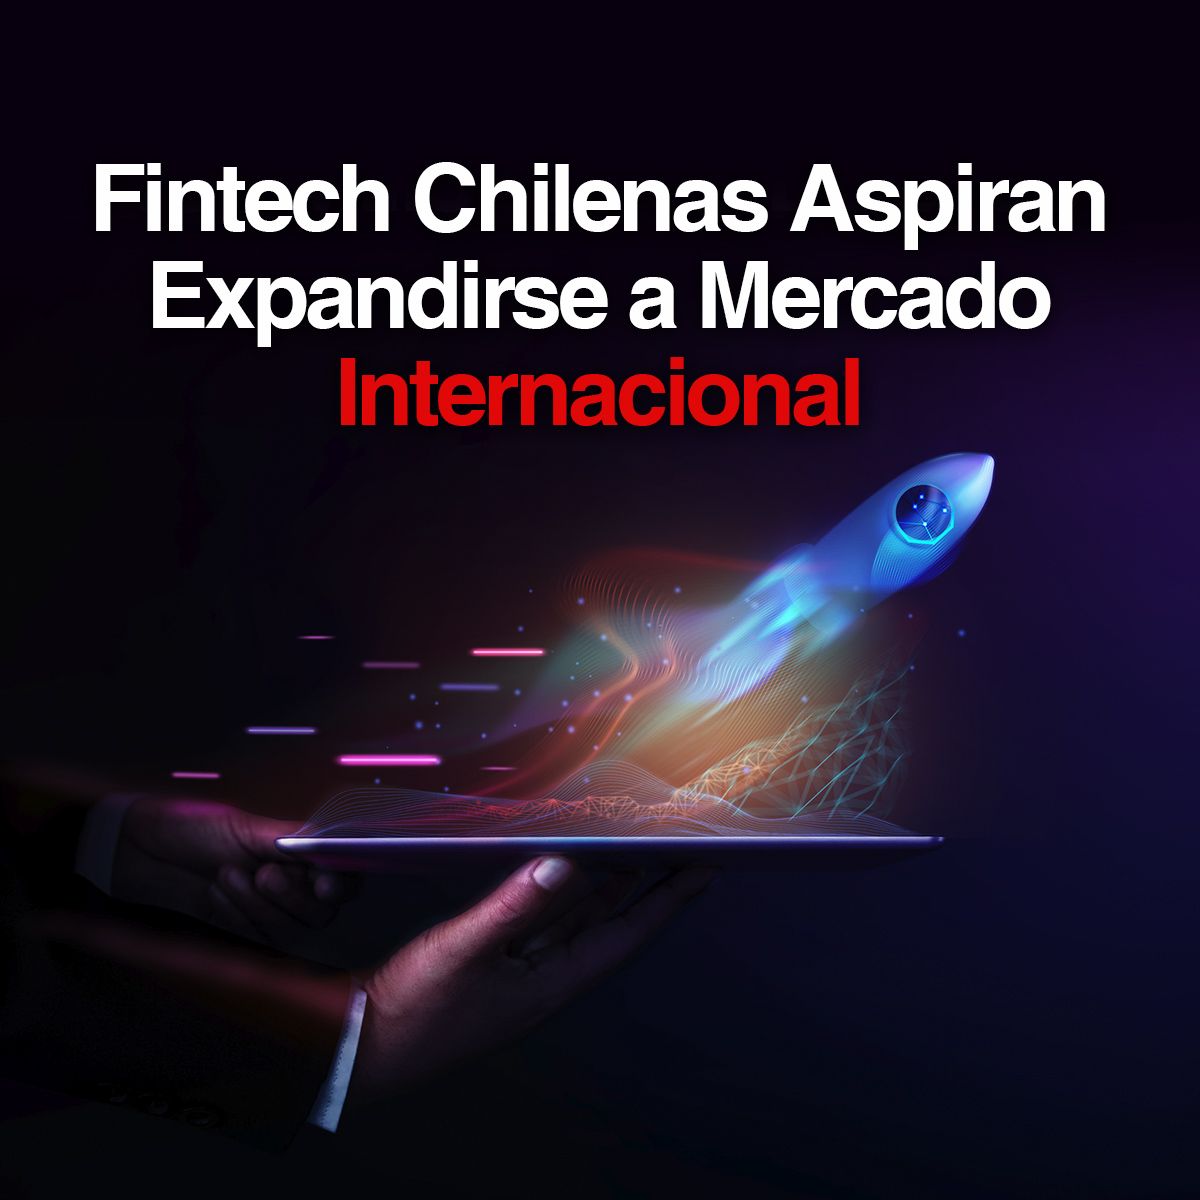 Fintech Chilenas Aspiran Expandirse a Mercado Internacional